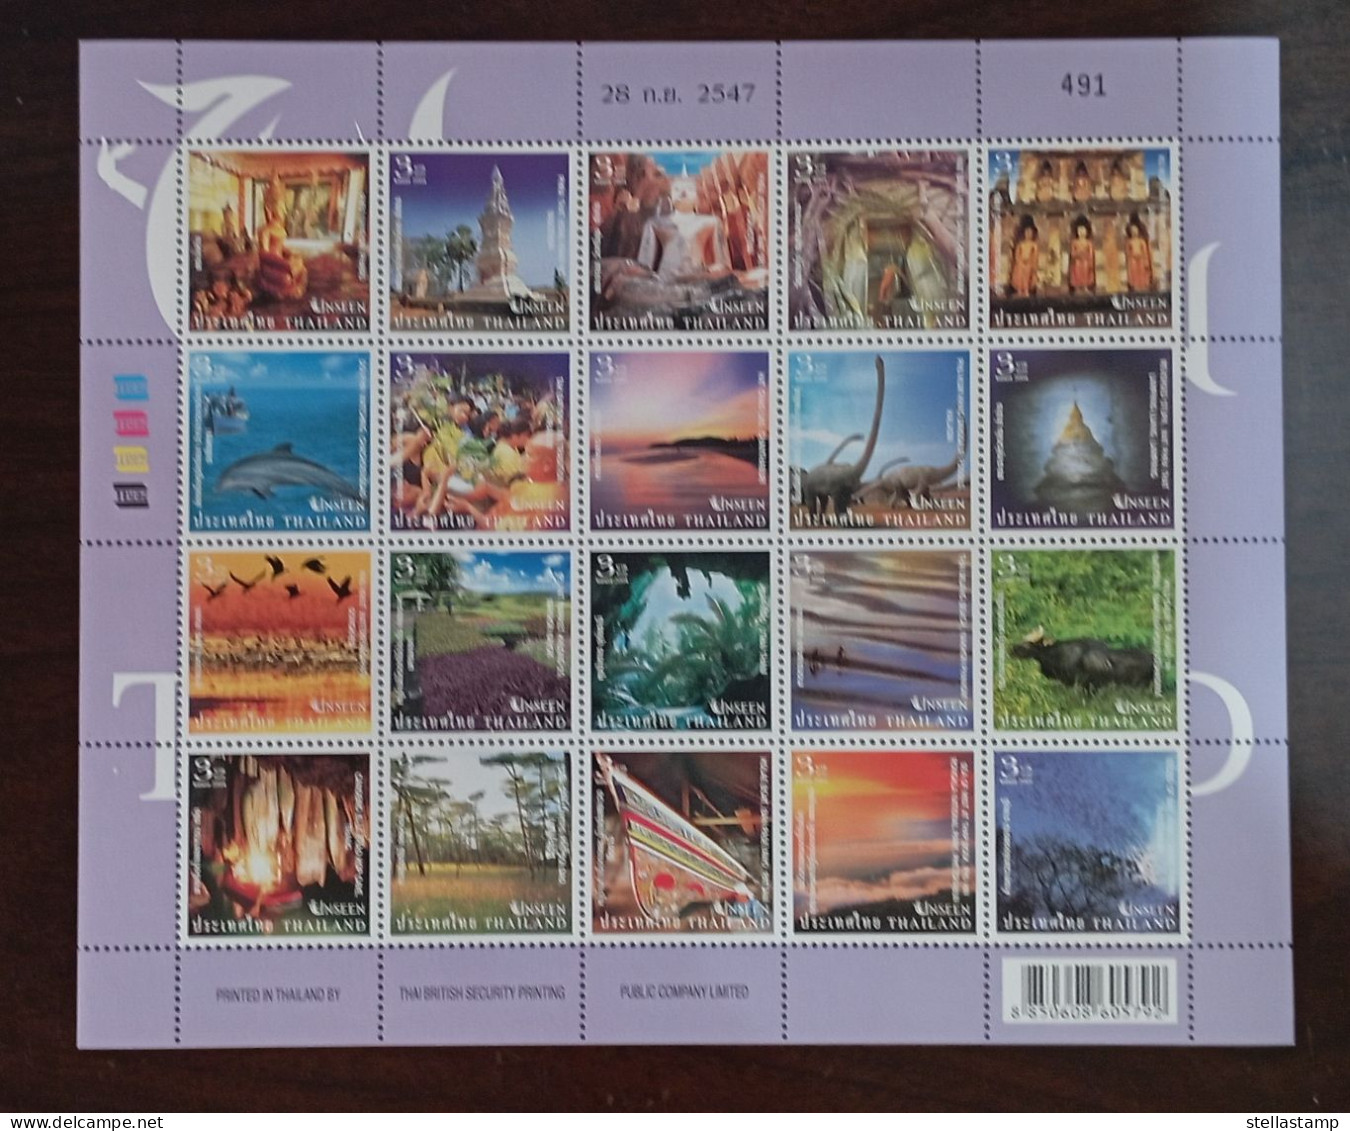 Thailand Stamp FS 2004 Unseen Thailand 3rd - Thailand